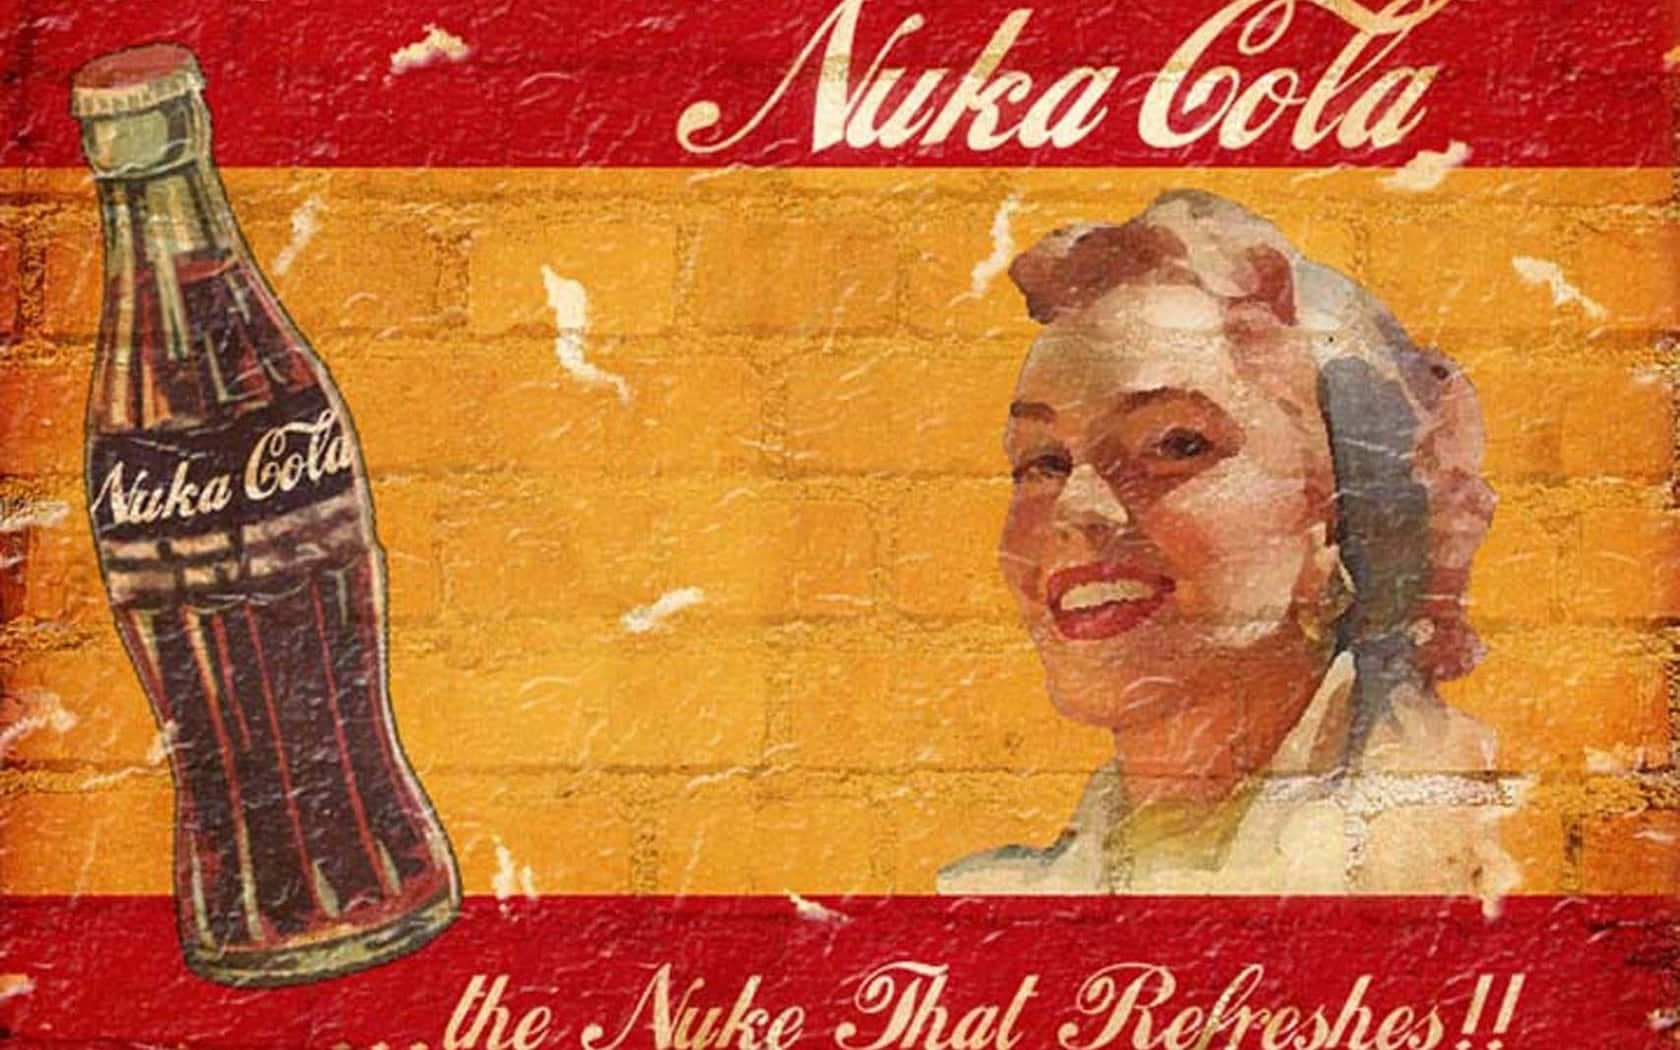 Genießensie Den Erfrischenden Geschmack Von Nuka Cola! Wallpaper